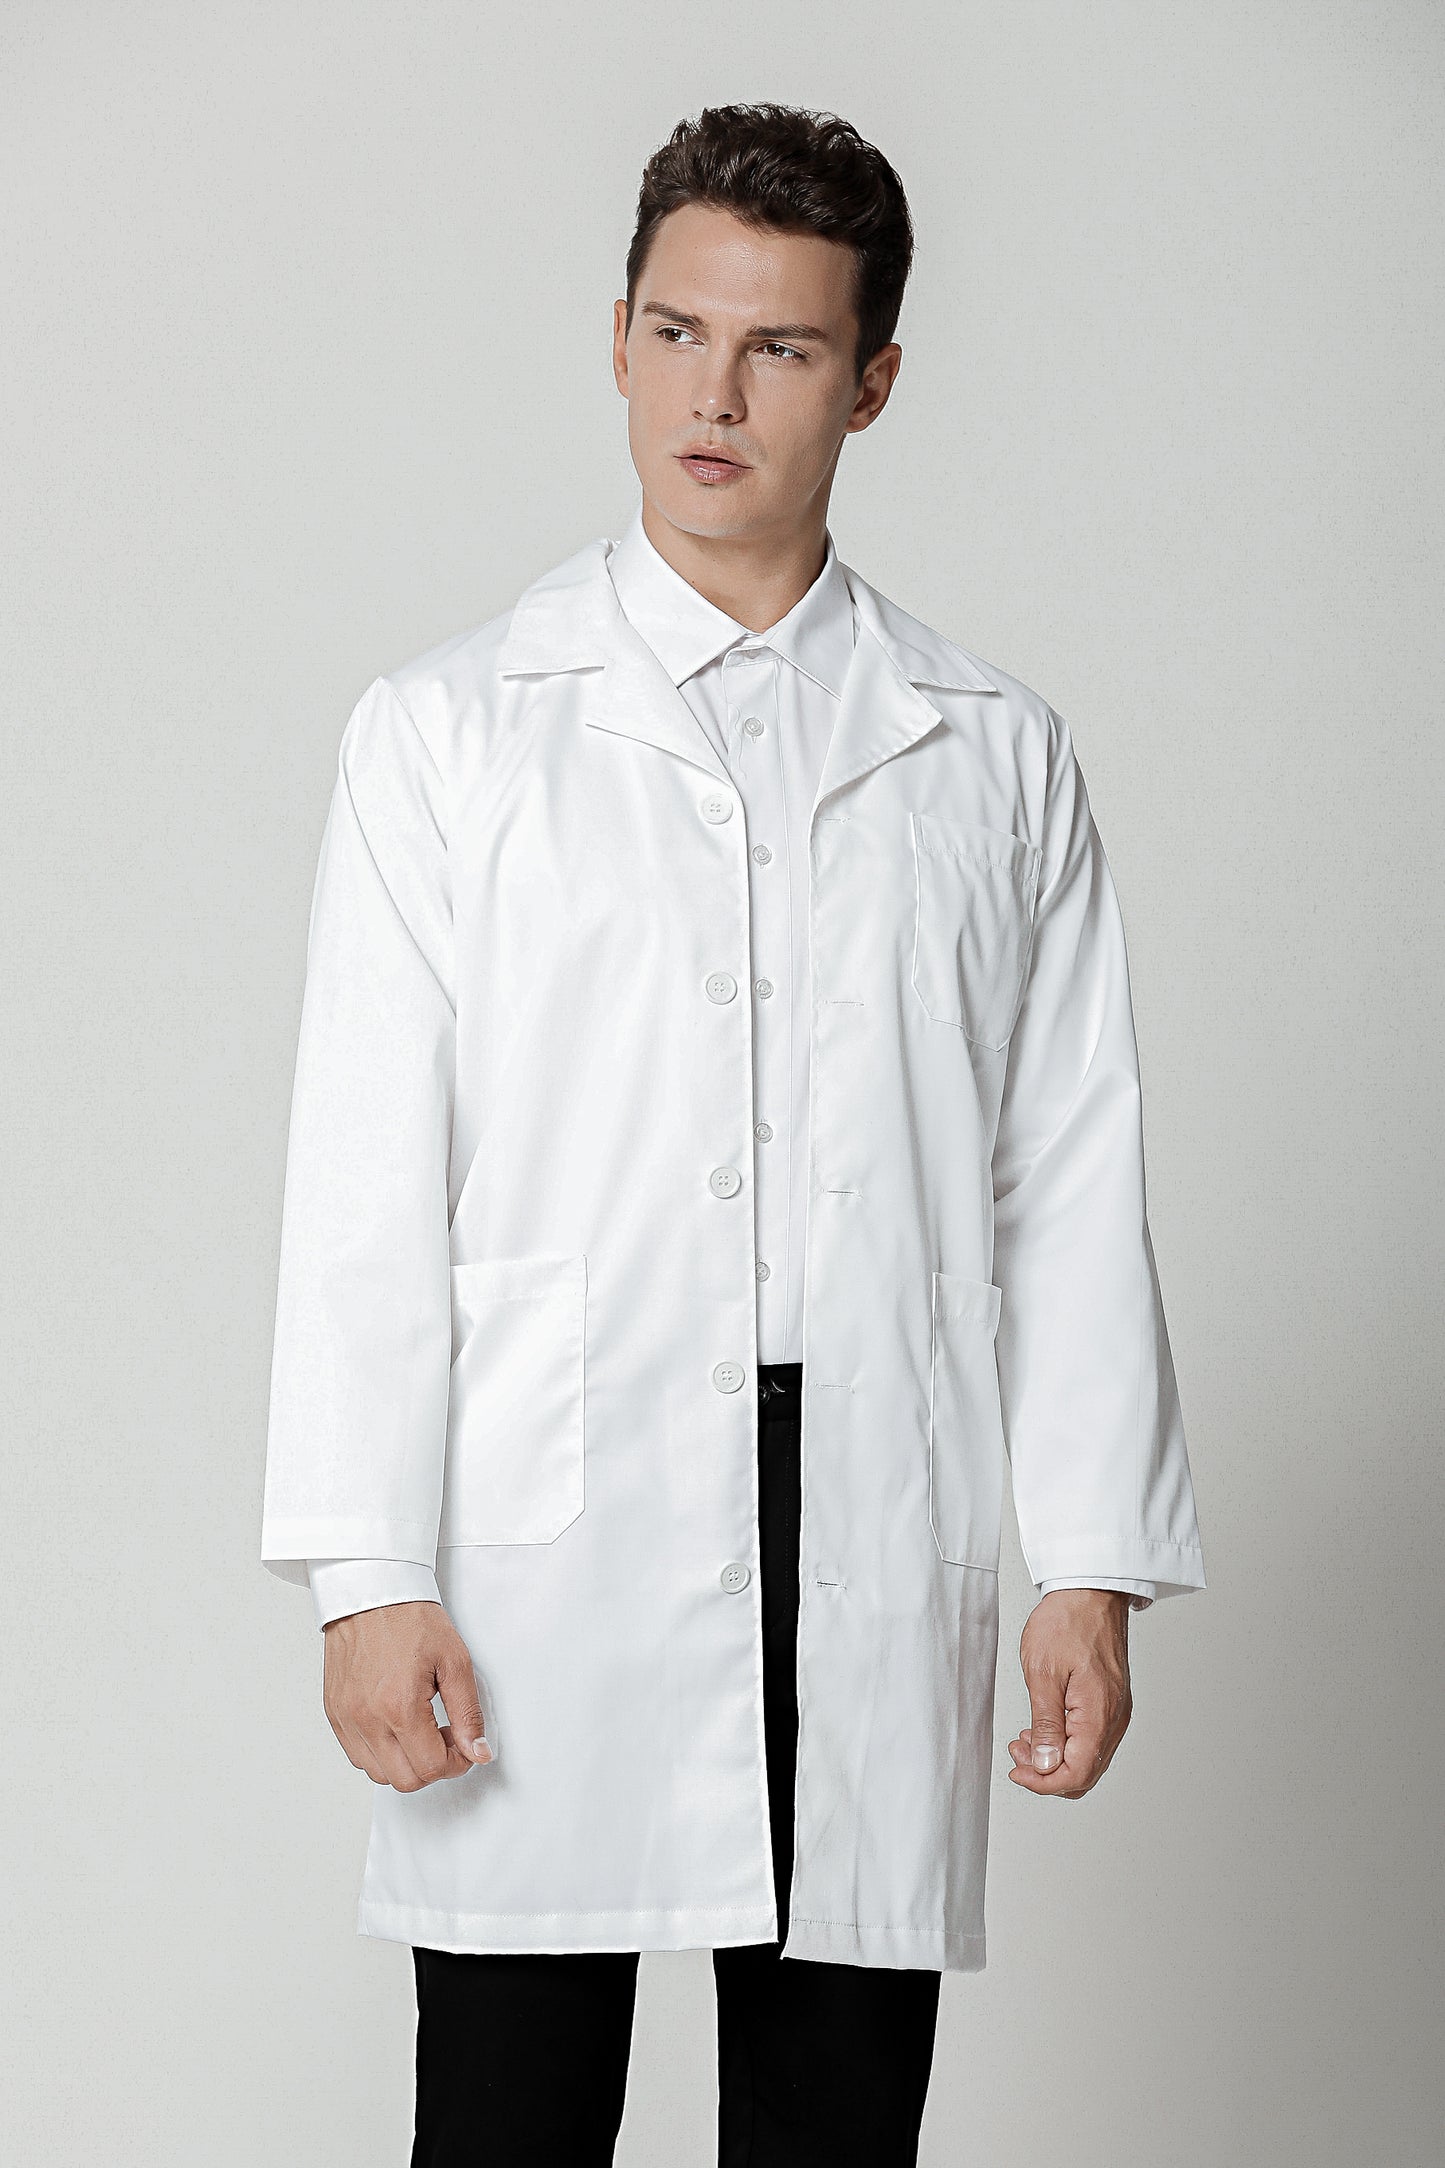 Laboratory Coat White, Long Sleeve